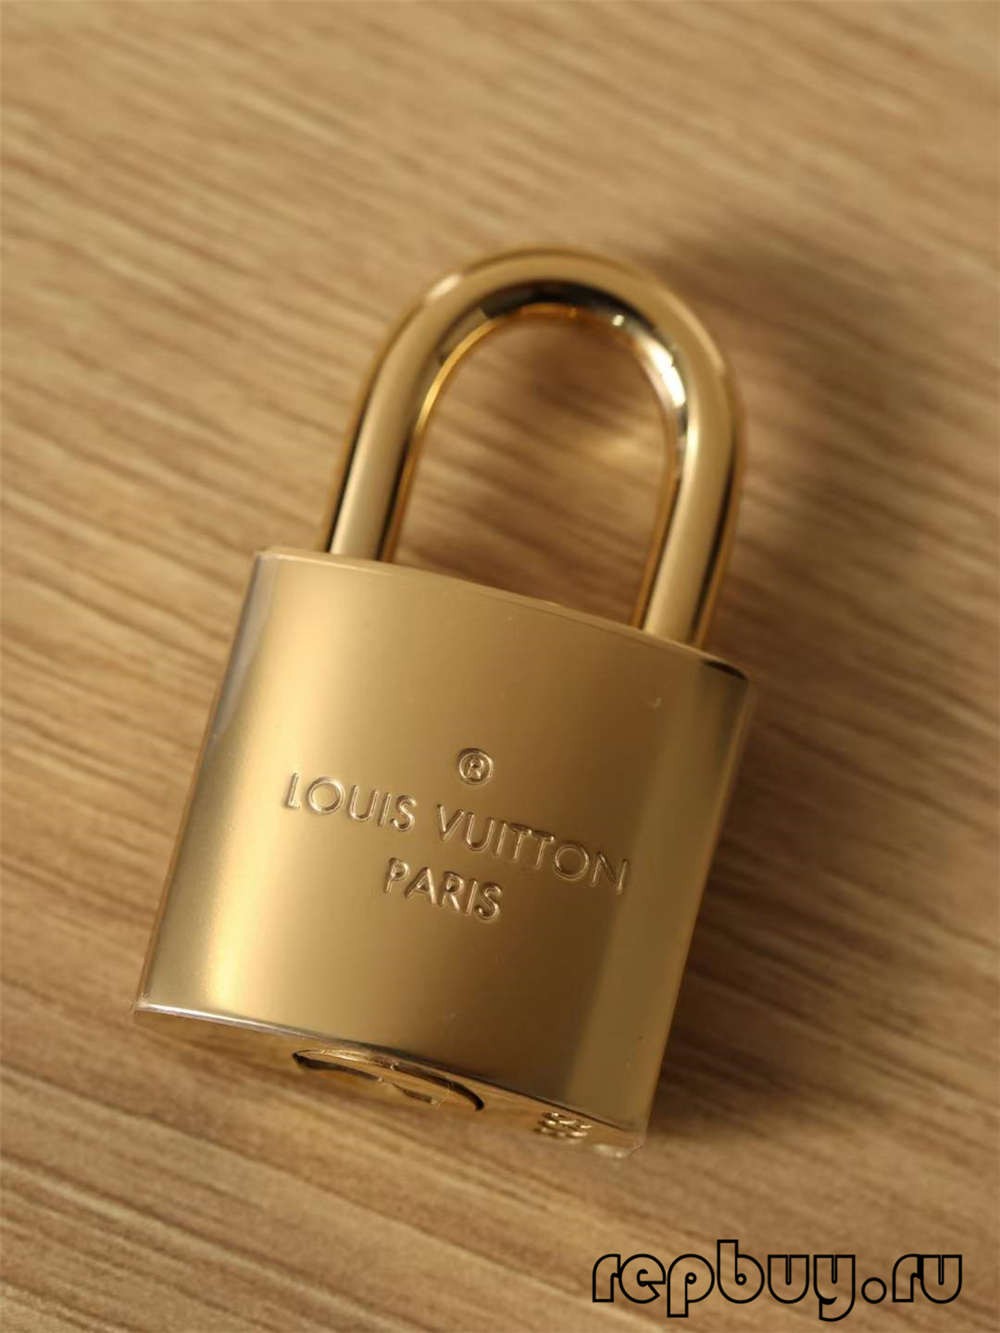 Louis Vuitton M45165 VANITY Small Top Replica geantă de mână și detaliu de închidere (2022 actualizat)-Magazin online de geanți Louis Vuitton fals de cea mai bună calitate, geantă de designer replica ru